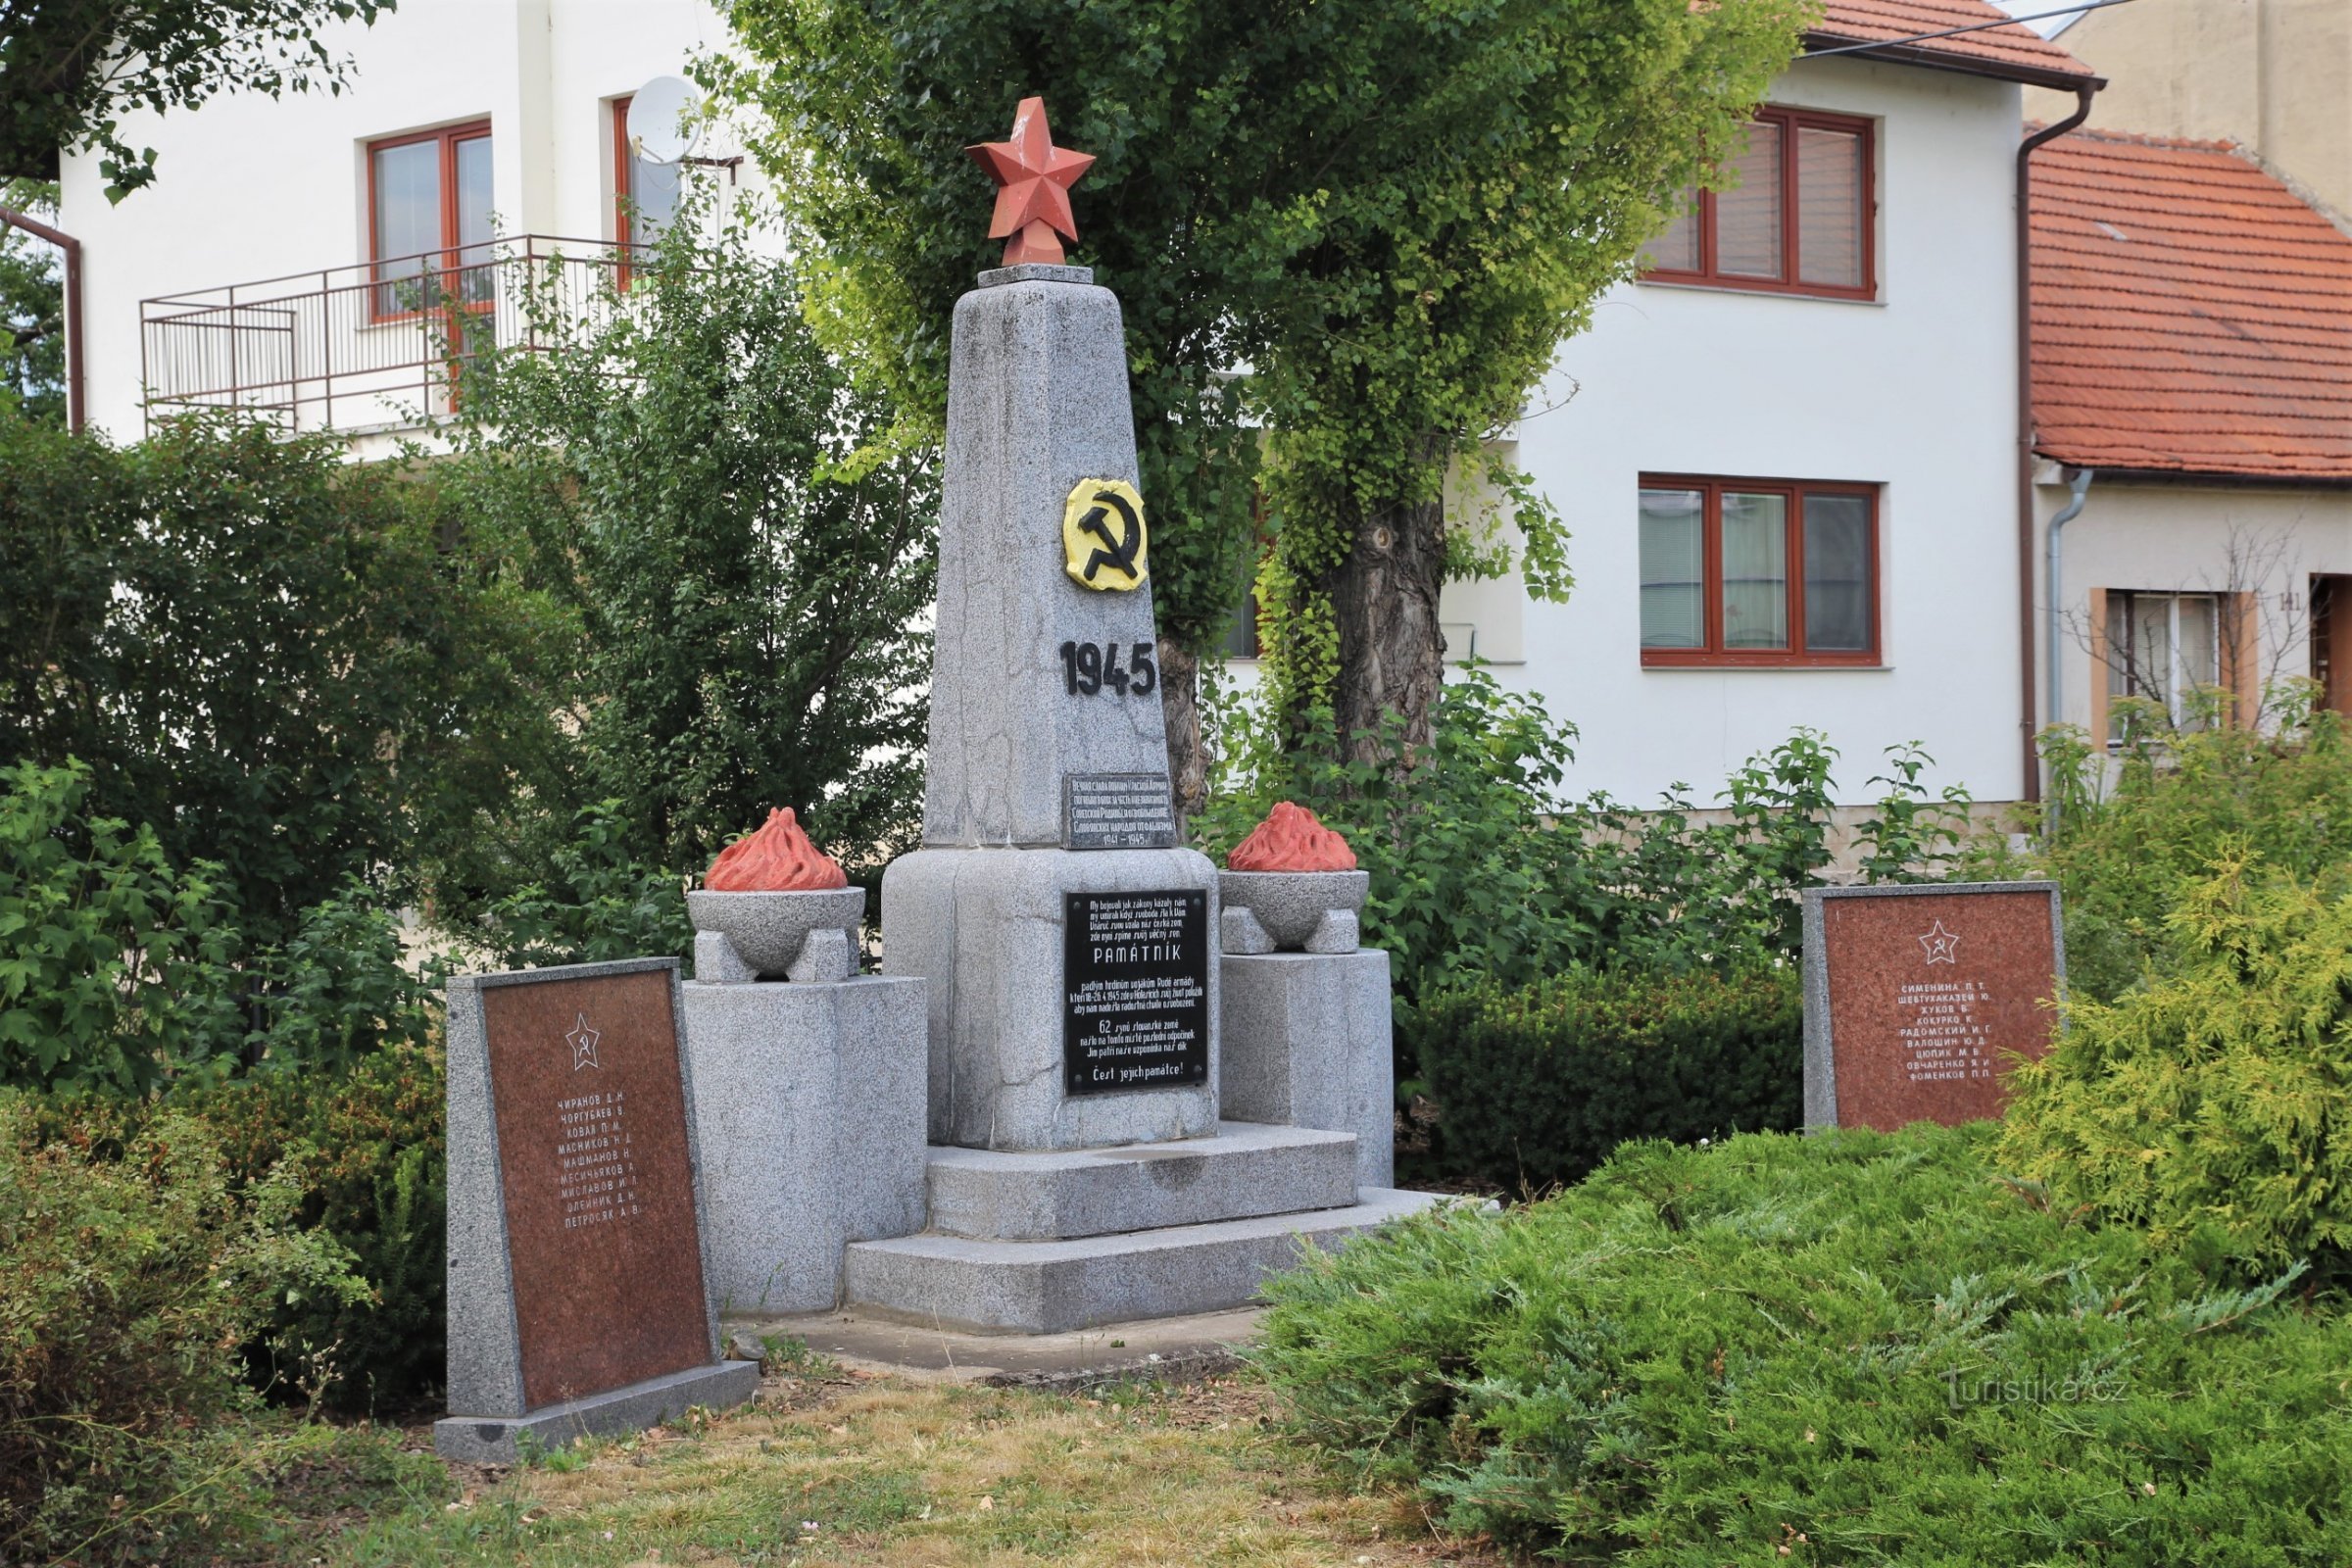 Entinen muistomerkki kaatuneille puna-armeijan sotilaille, joka seisoi täällä vuoteen 2018 - kesään 2016